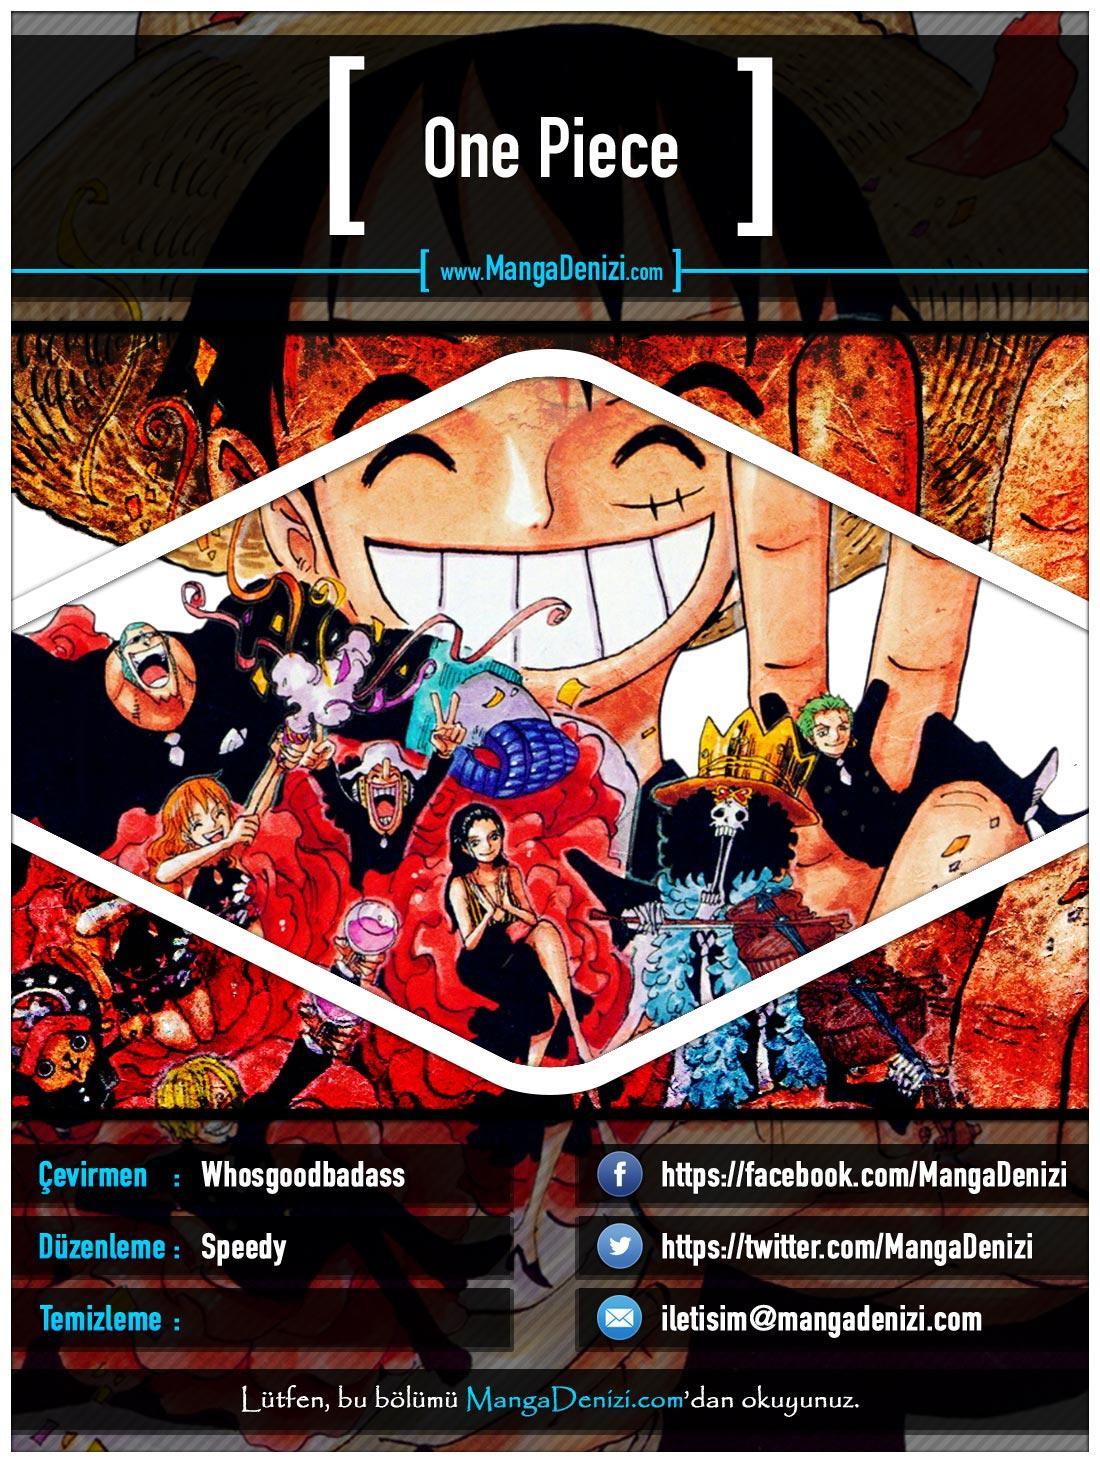 One Piece [Renkli] mangasının 0444 bölümünün 1. sayfasını okuyorsunuz.